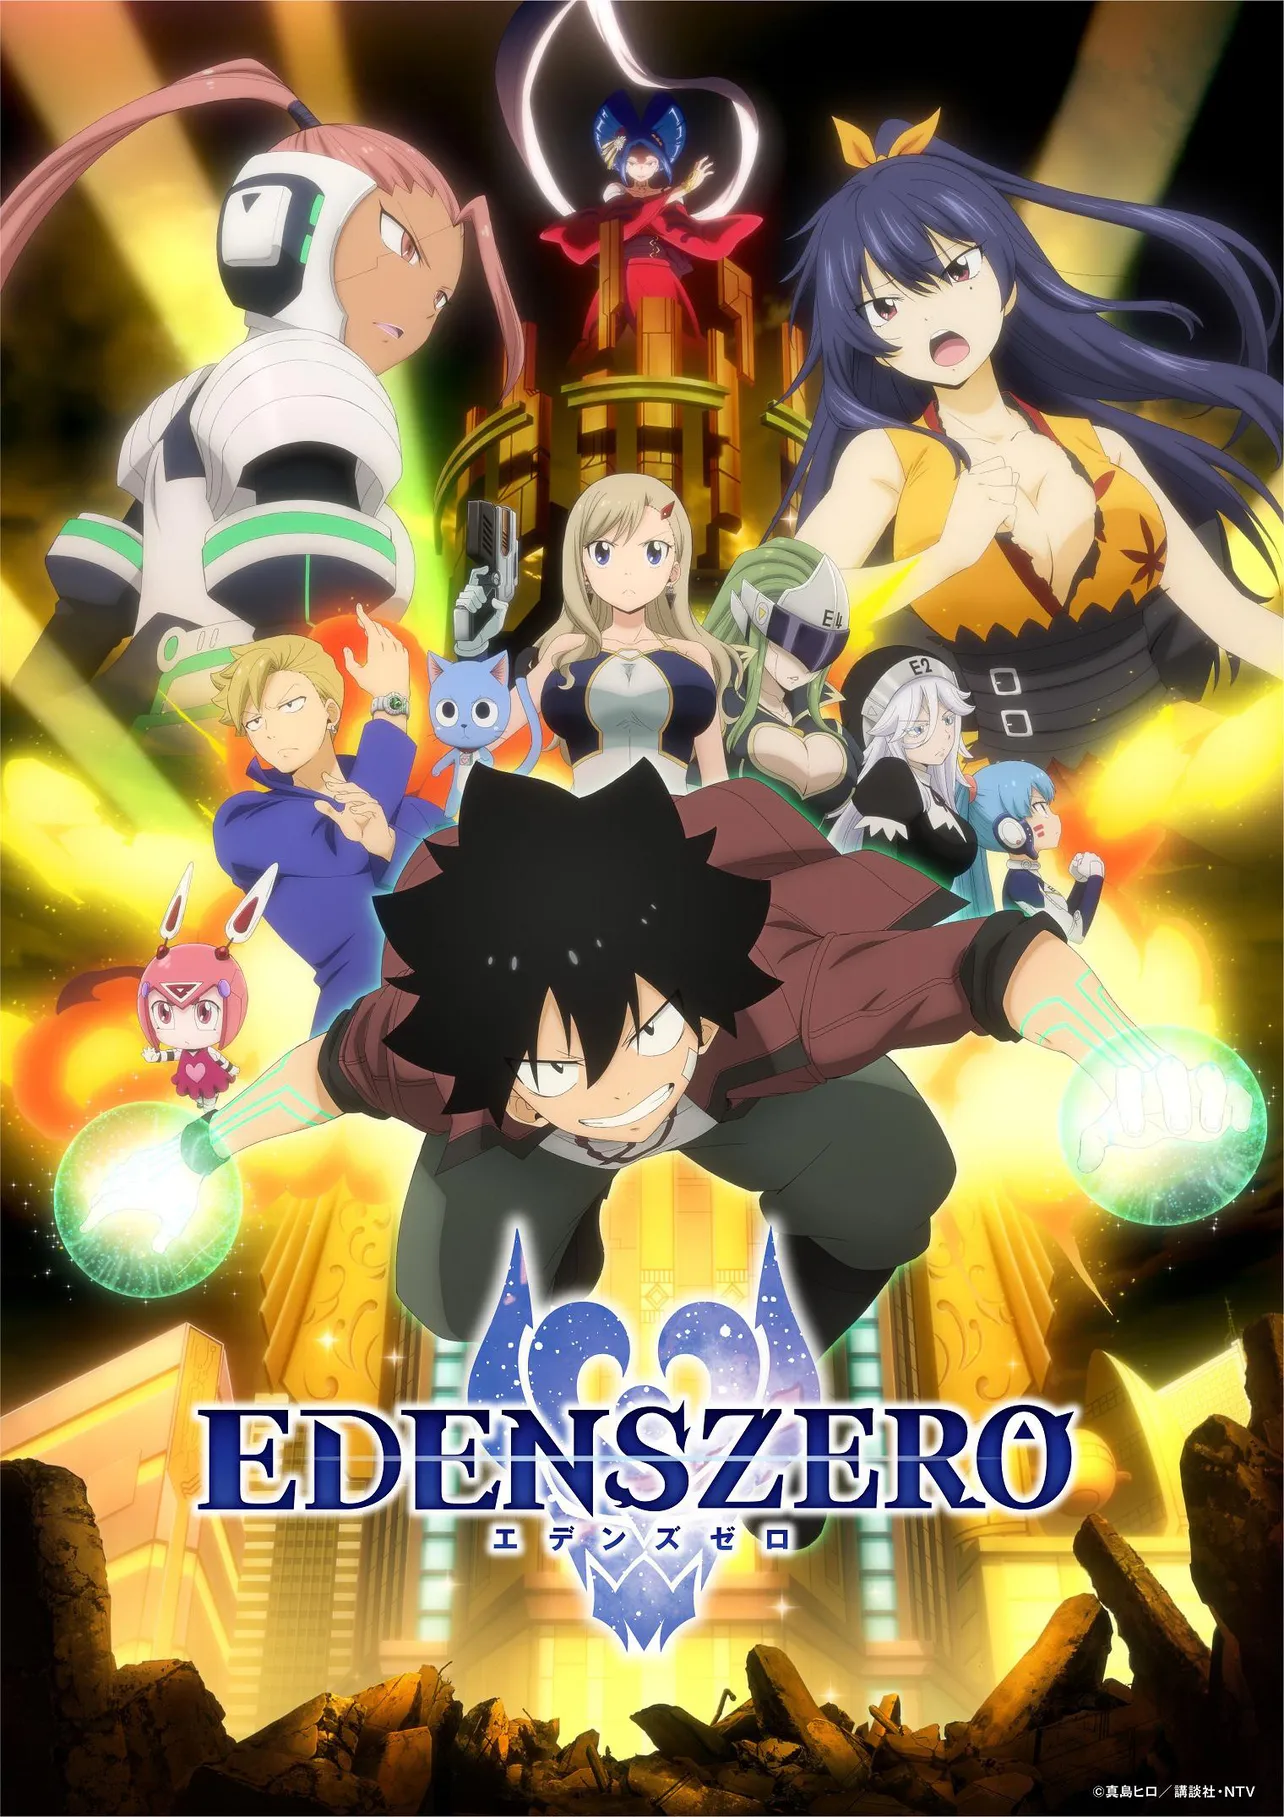 テレビアニメ「EDENS ZERO」は毎週土曜深夜0:55-1:25、日本テレビ系にて放送中